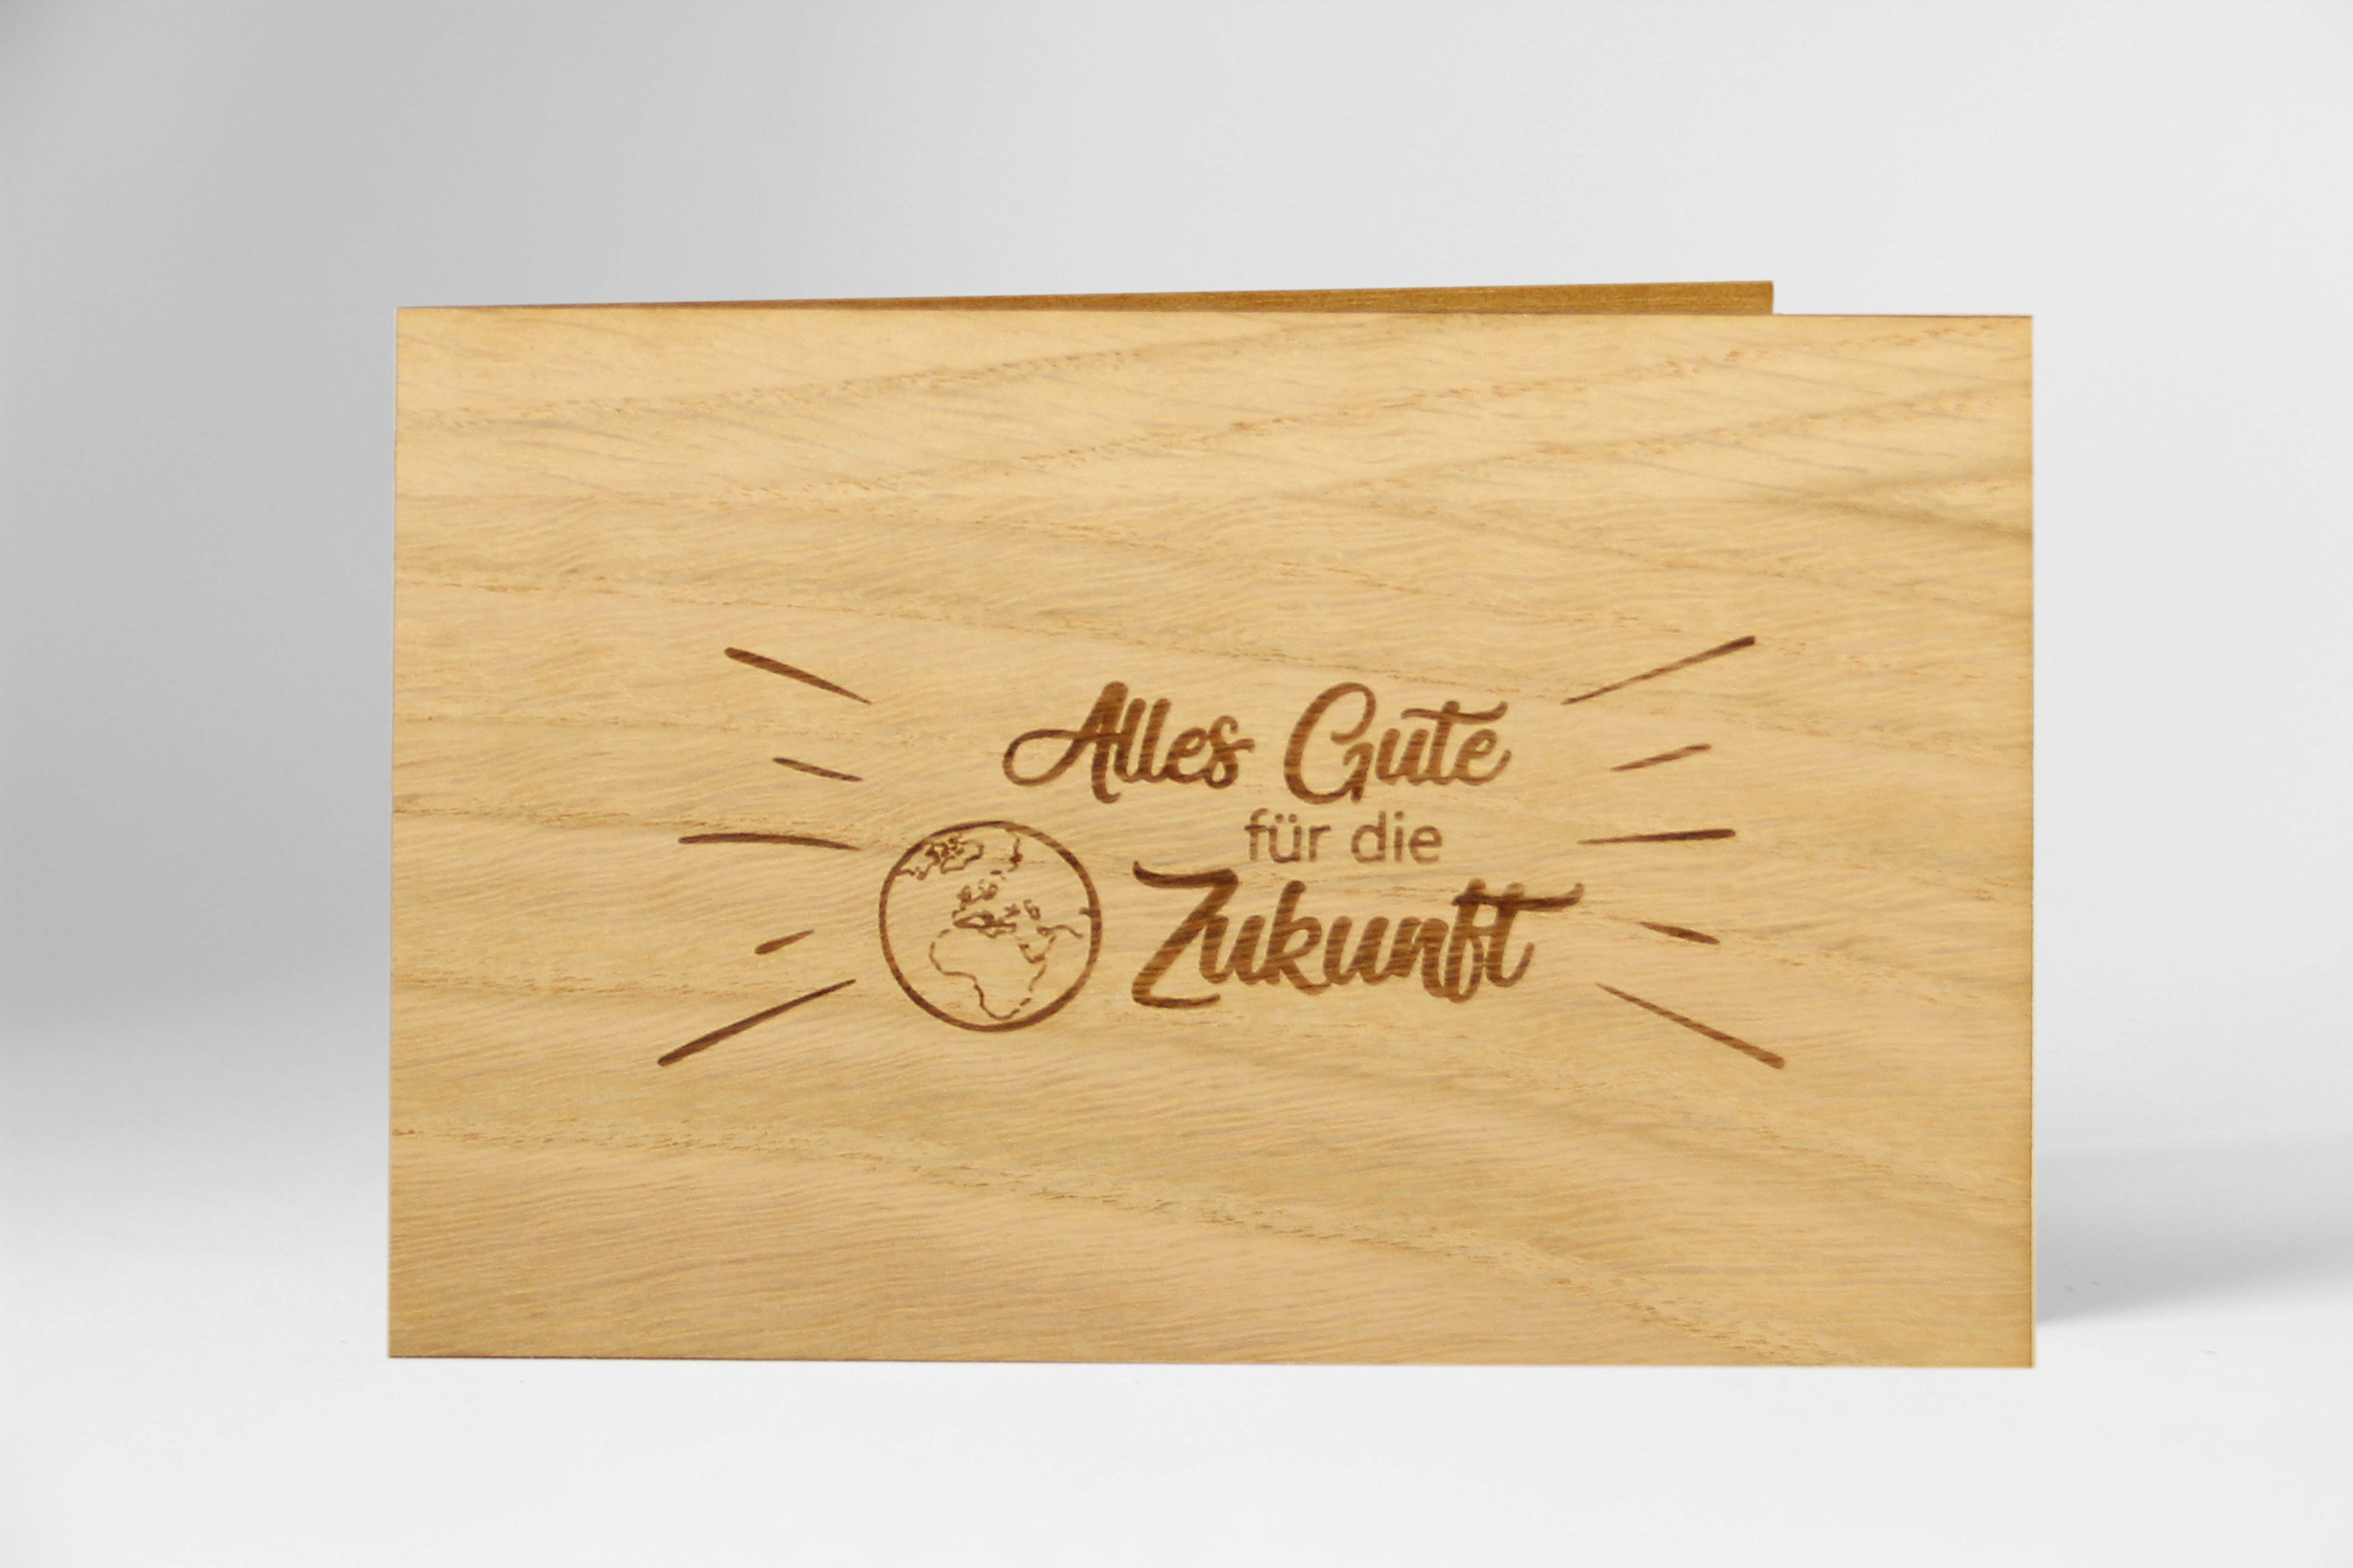 Holzgrusskarten - Geschenkkarte "Alles Gute für die Zukunft" aus Eiche, Dankeskarte